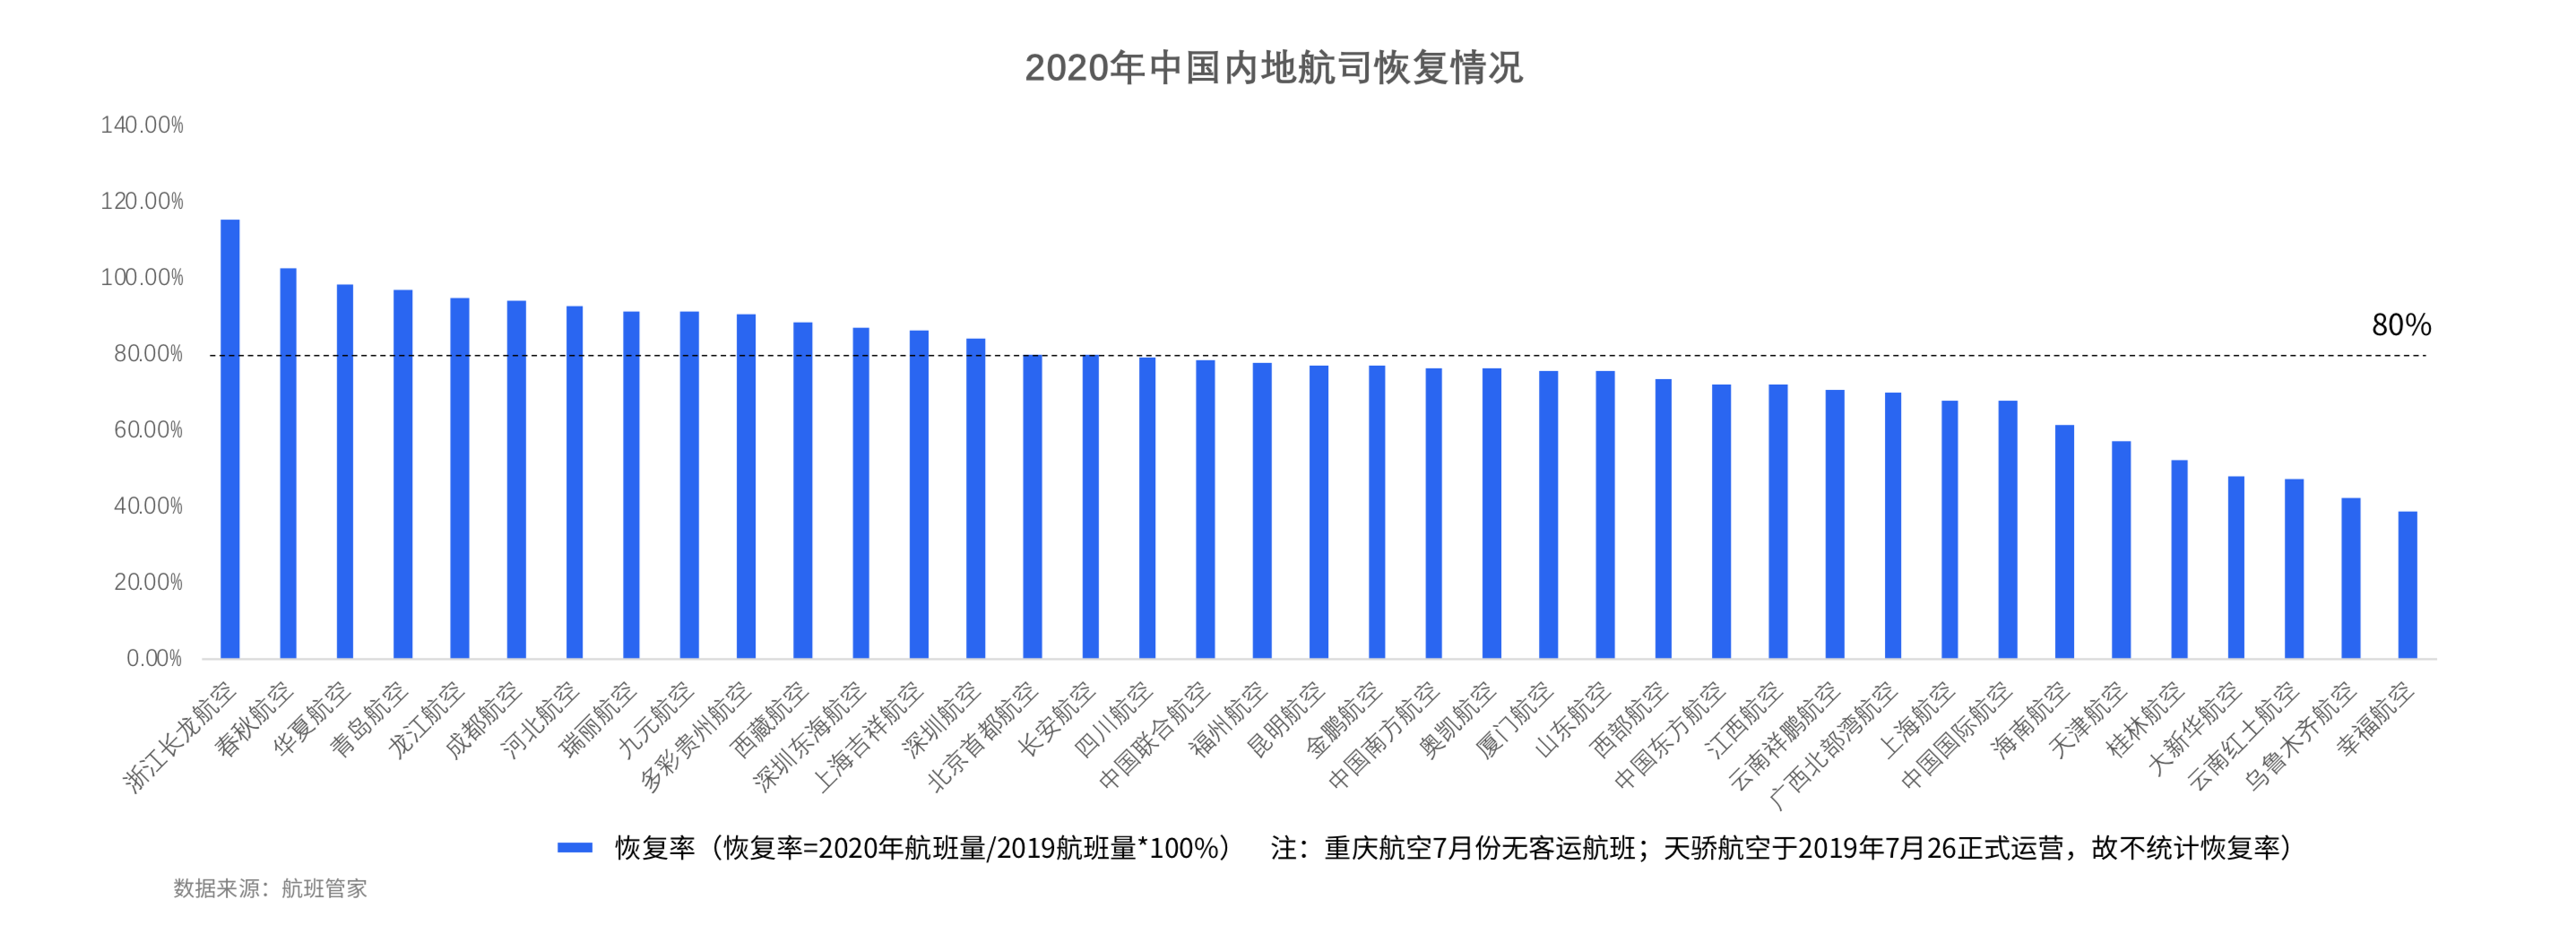 新知图谱, 航班管家发布《2020年7月中国民航运行数据报告》